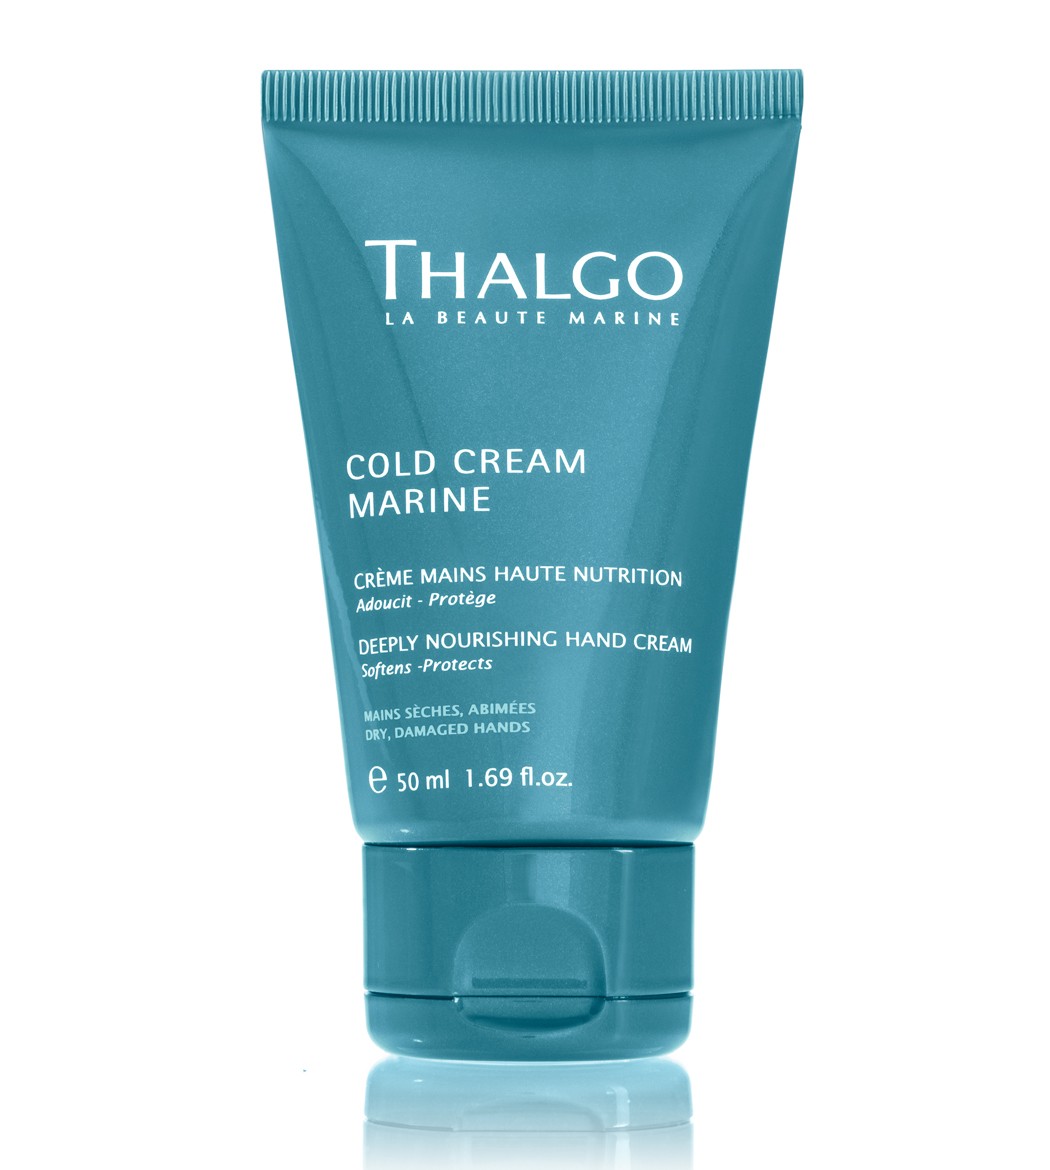 Интенсивный питательный крем для рук Cold Cream Marine Deeply Nourishing Hand Cream Thalgo 50 мл — фото №1